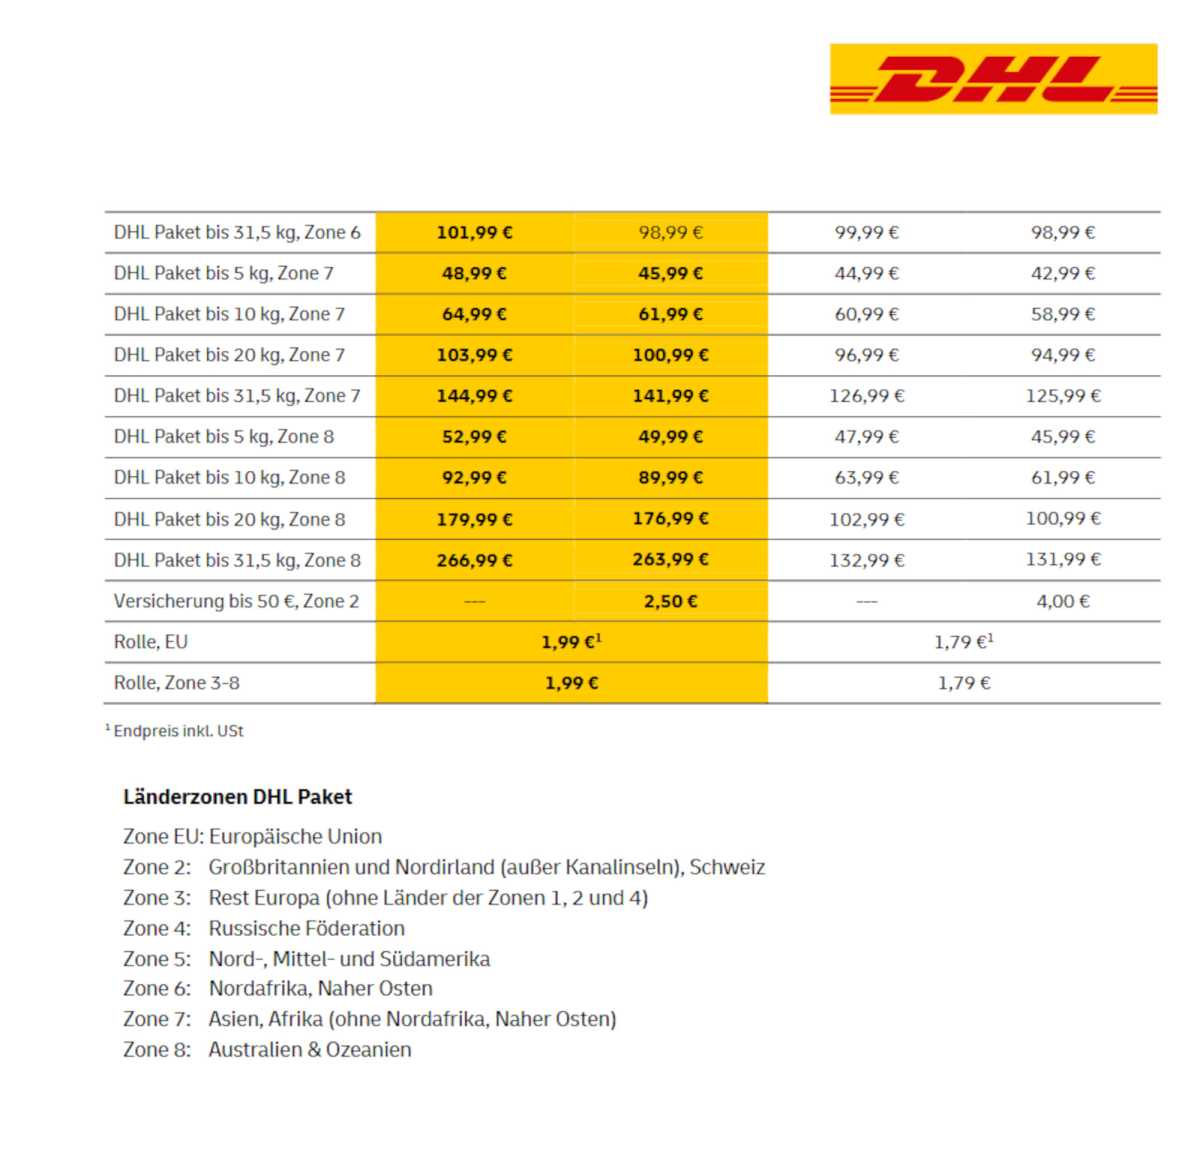 Deutsche Post DHL Das kosten Päckchen und Pakete ab 1.7. alle Preise